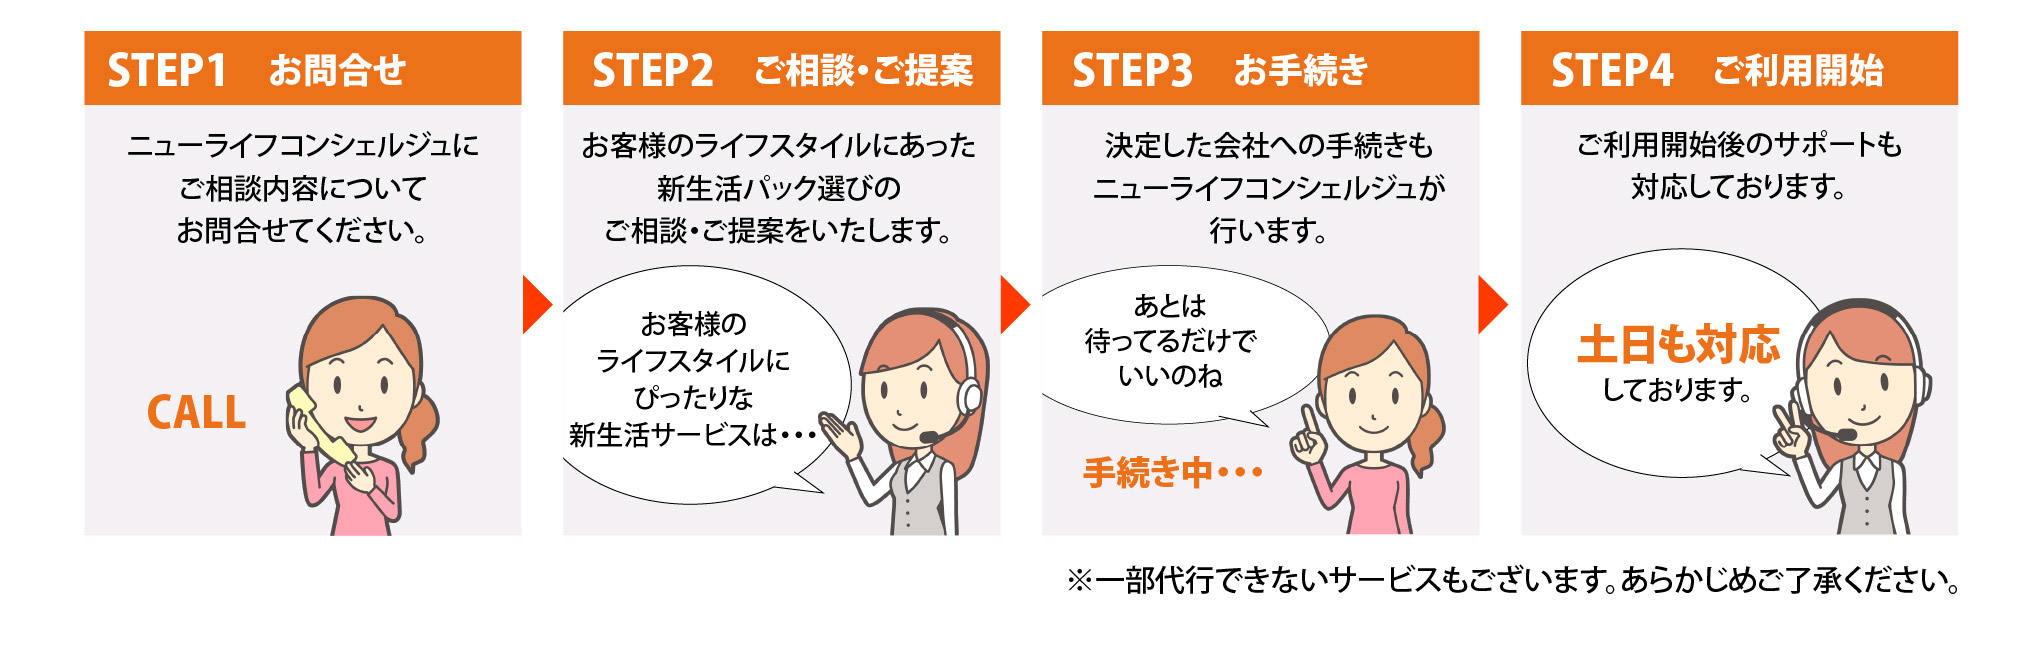 STEP1お問合せ STEP2ご相談・ご提案 STEP3お手続き STEP4ご利用開始